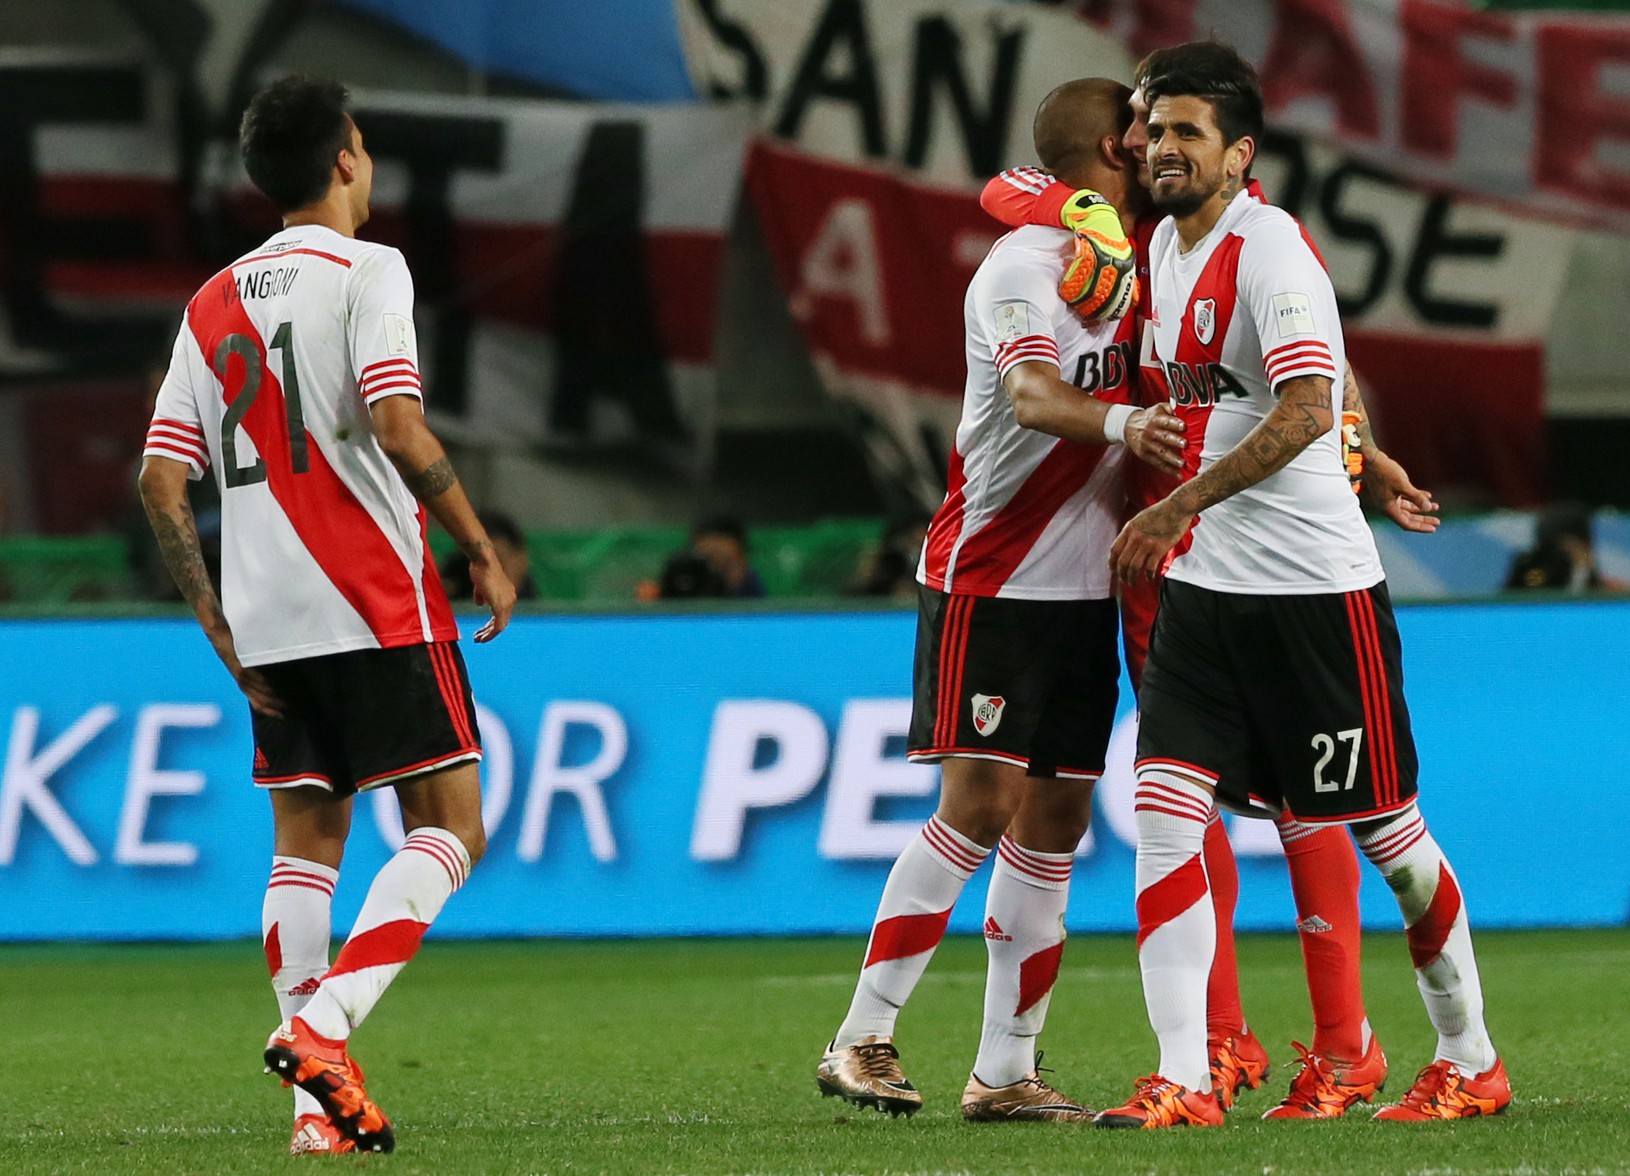 Radosť hráčov River Plate